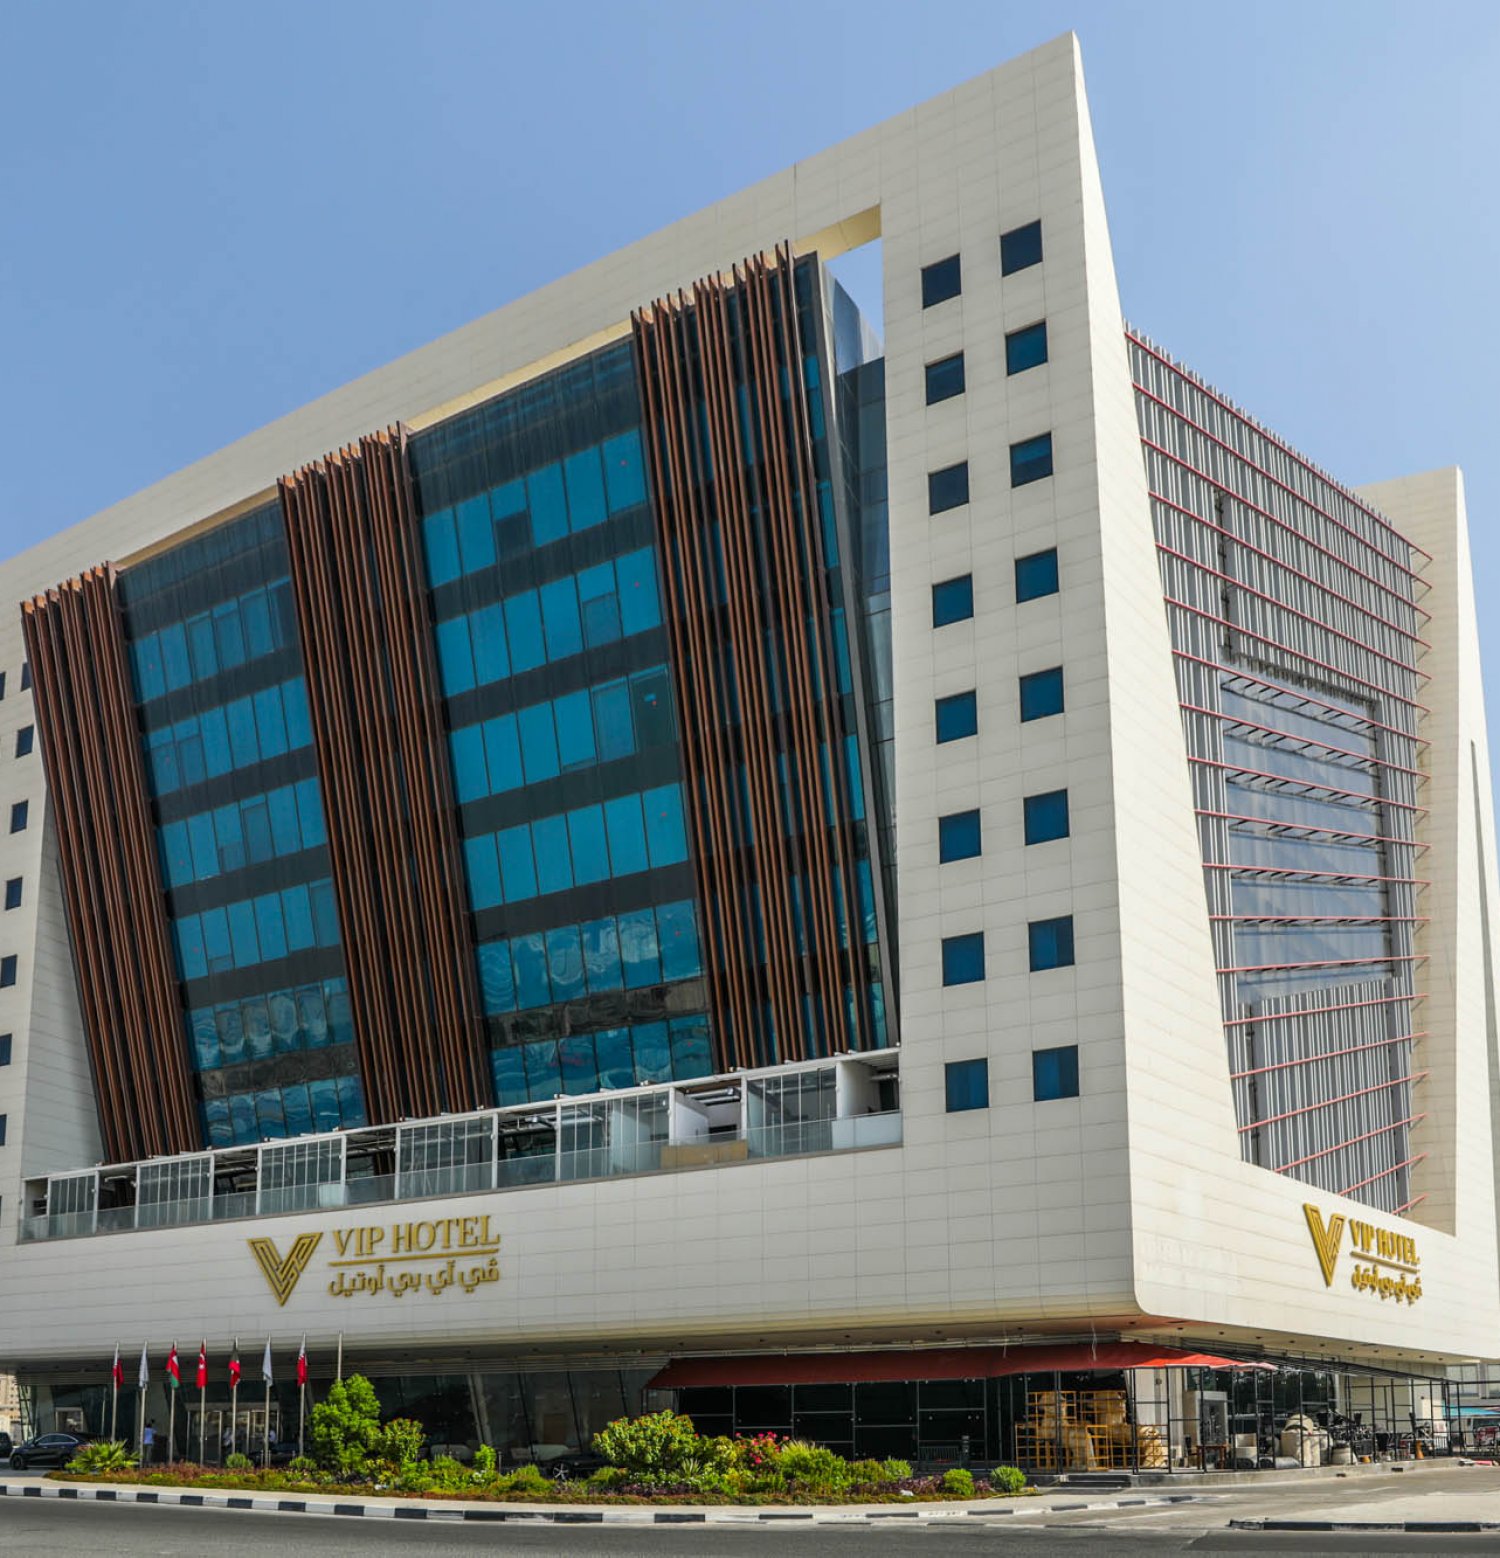 VIP Hotel,Doha,Qatar 